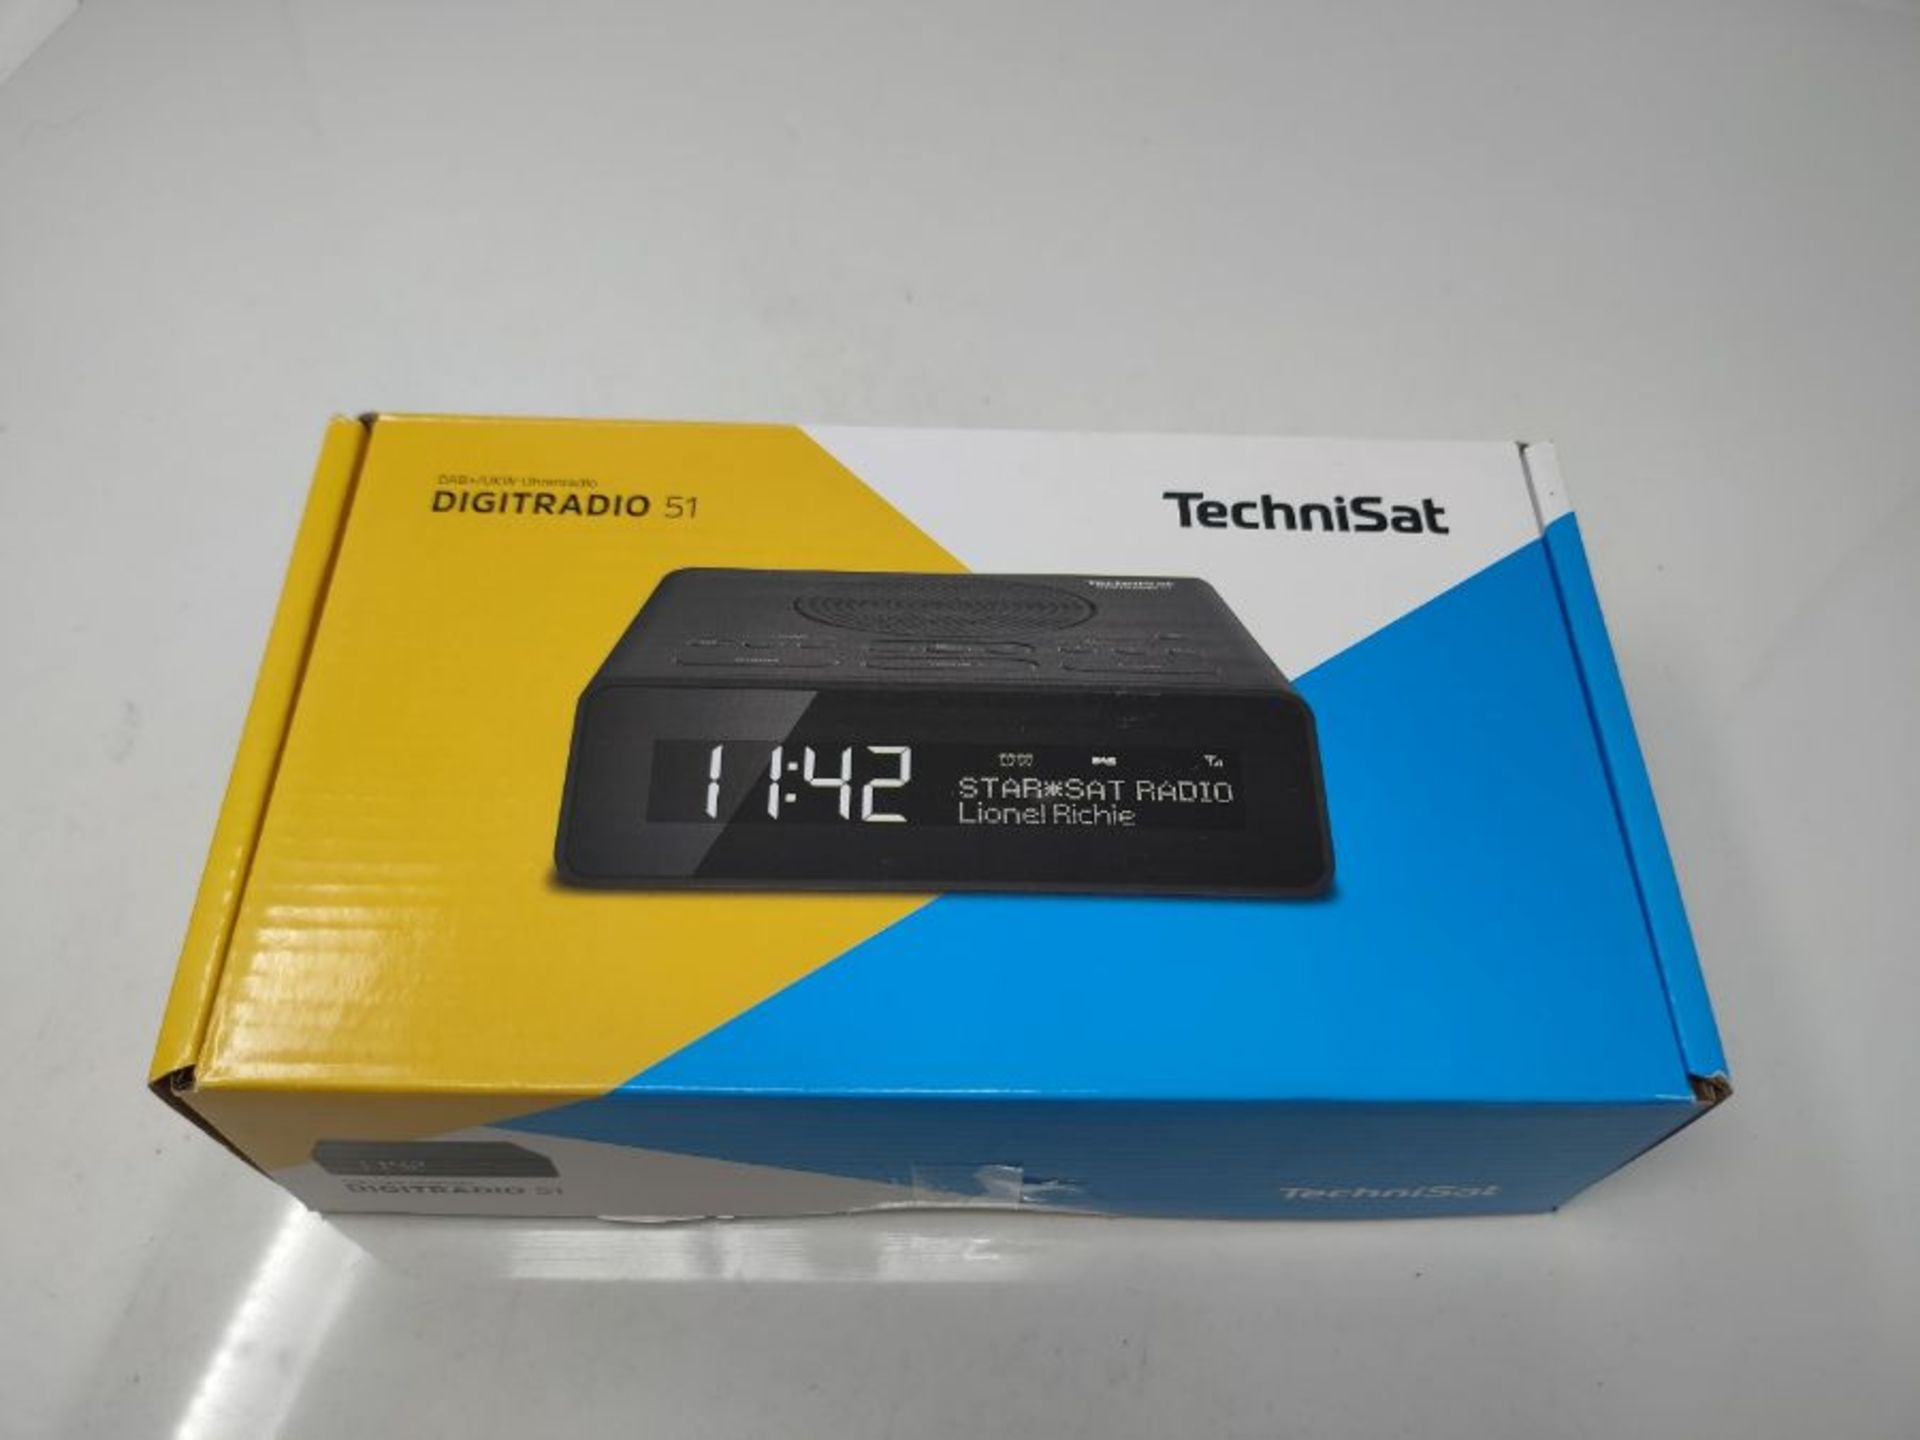 RRP £50.00 TechniSat Digitradio 51 DAB radio alarm clock (DAB, FM, clock radio, alarm clock with - Image 2 of 3